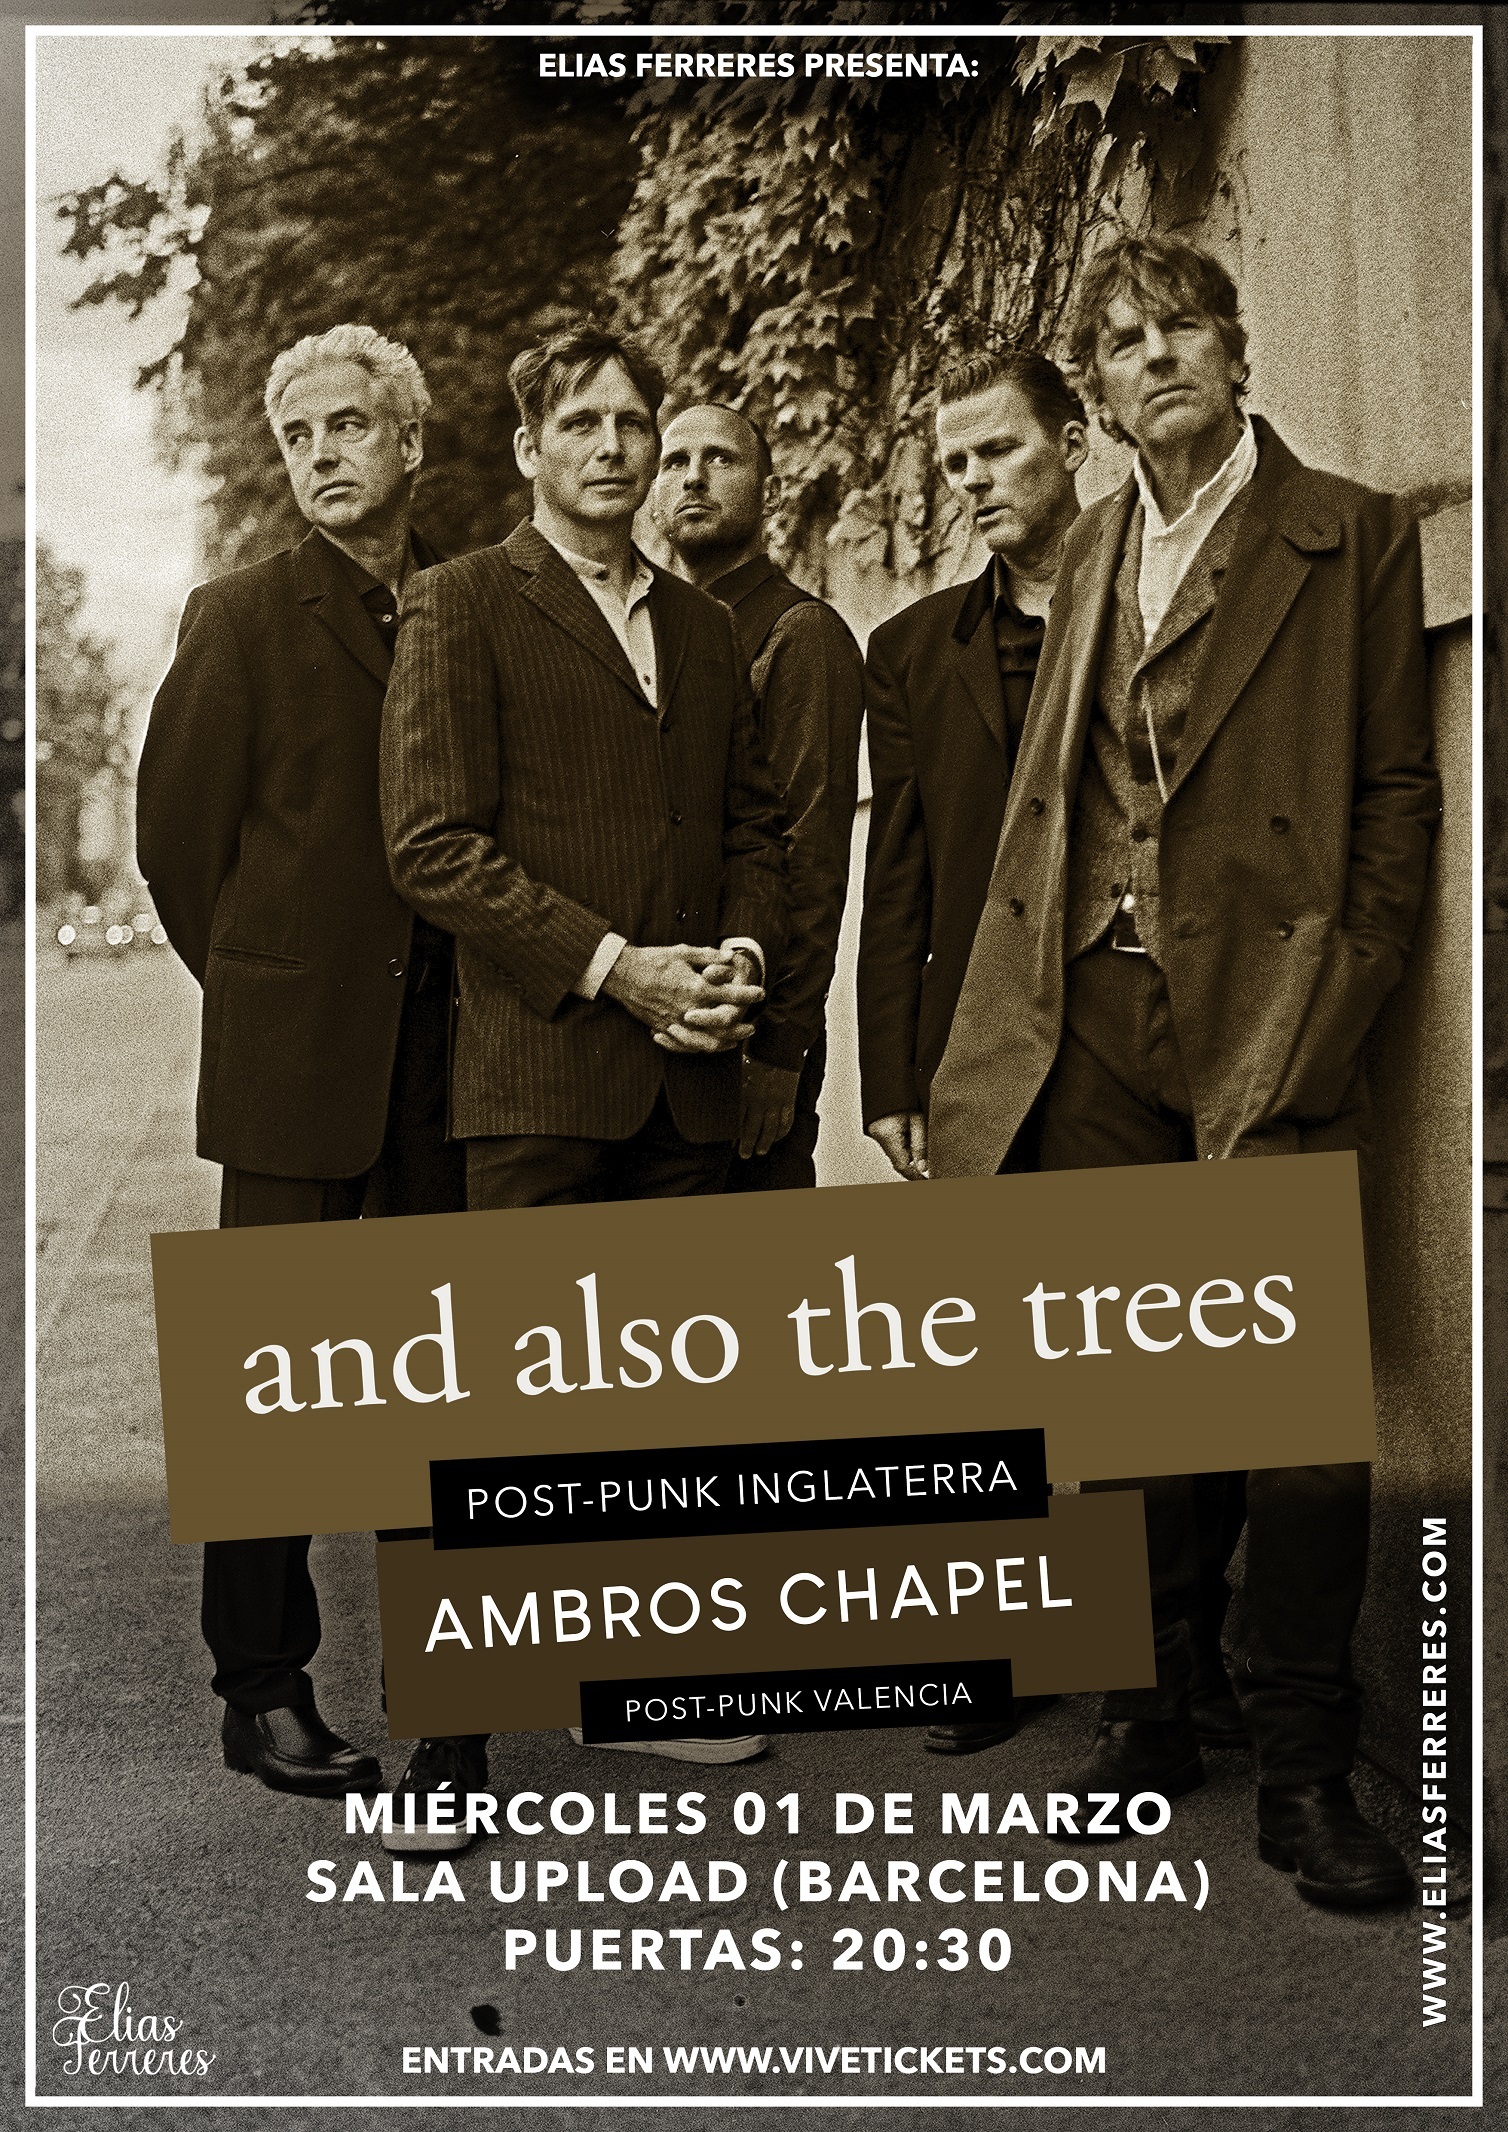 Lío gráfico Circunstancias imprevistas And Also The Trees en Barcelona el día 1 de Marzo - Rock The Best Music